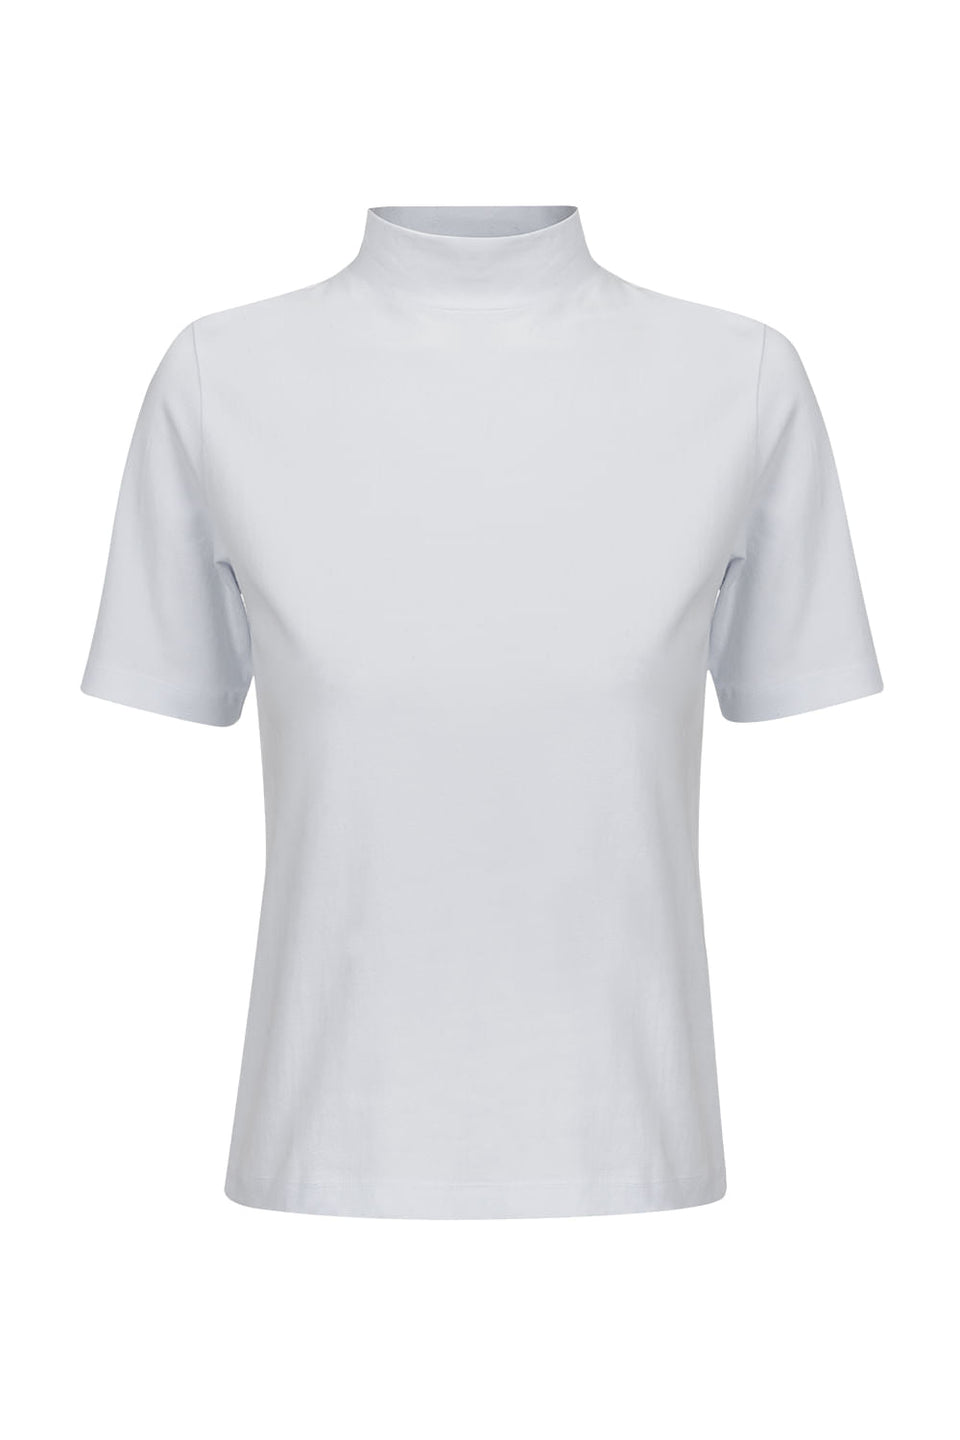 Camiseta Gola Alta Algodão Branco